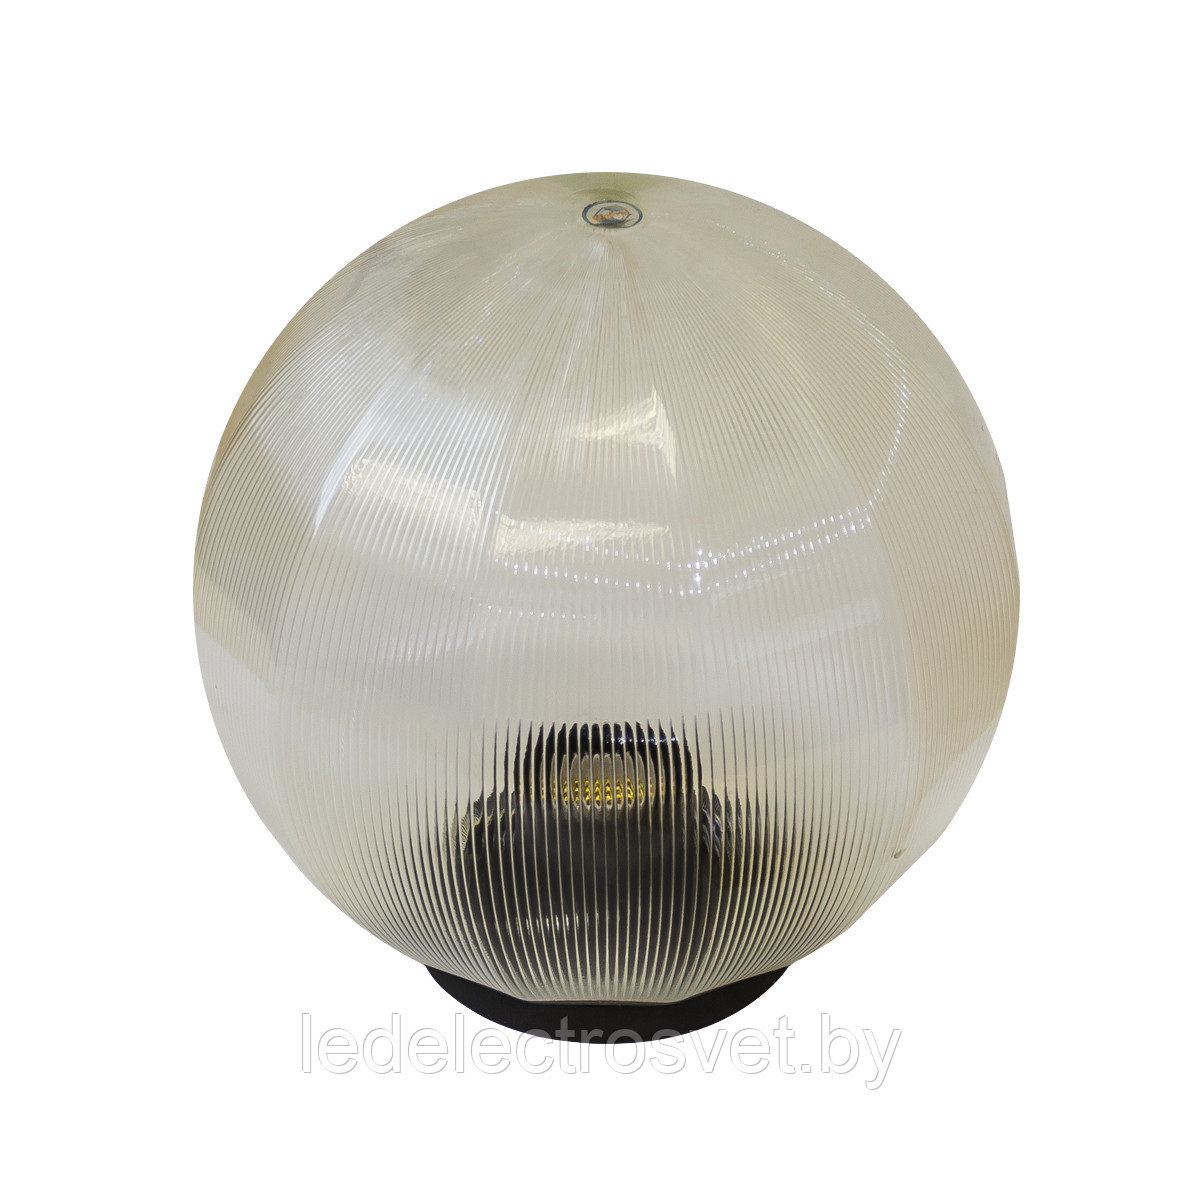 Светильник НТУ 12-100-302 УХЛ1.1,
призма с гранями прозрачная